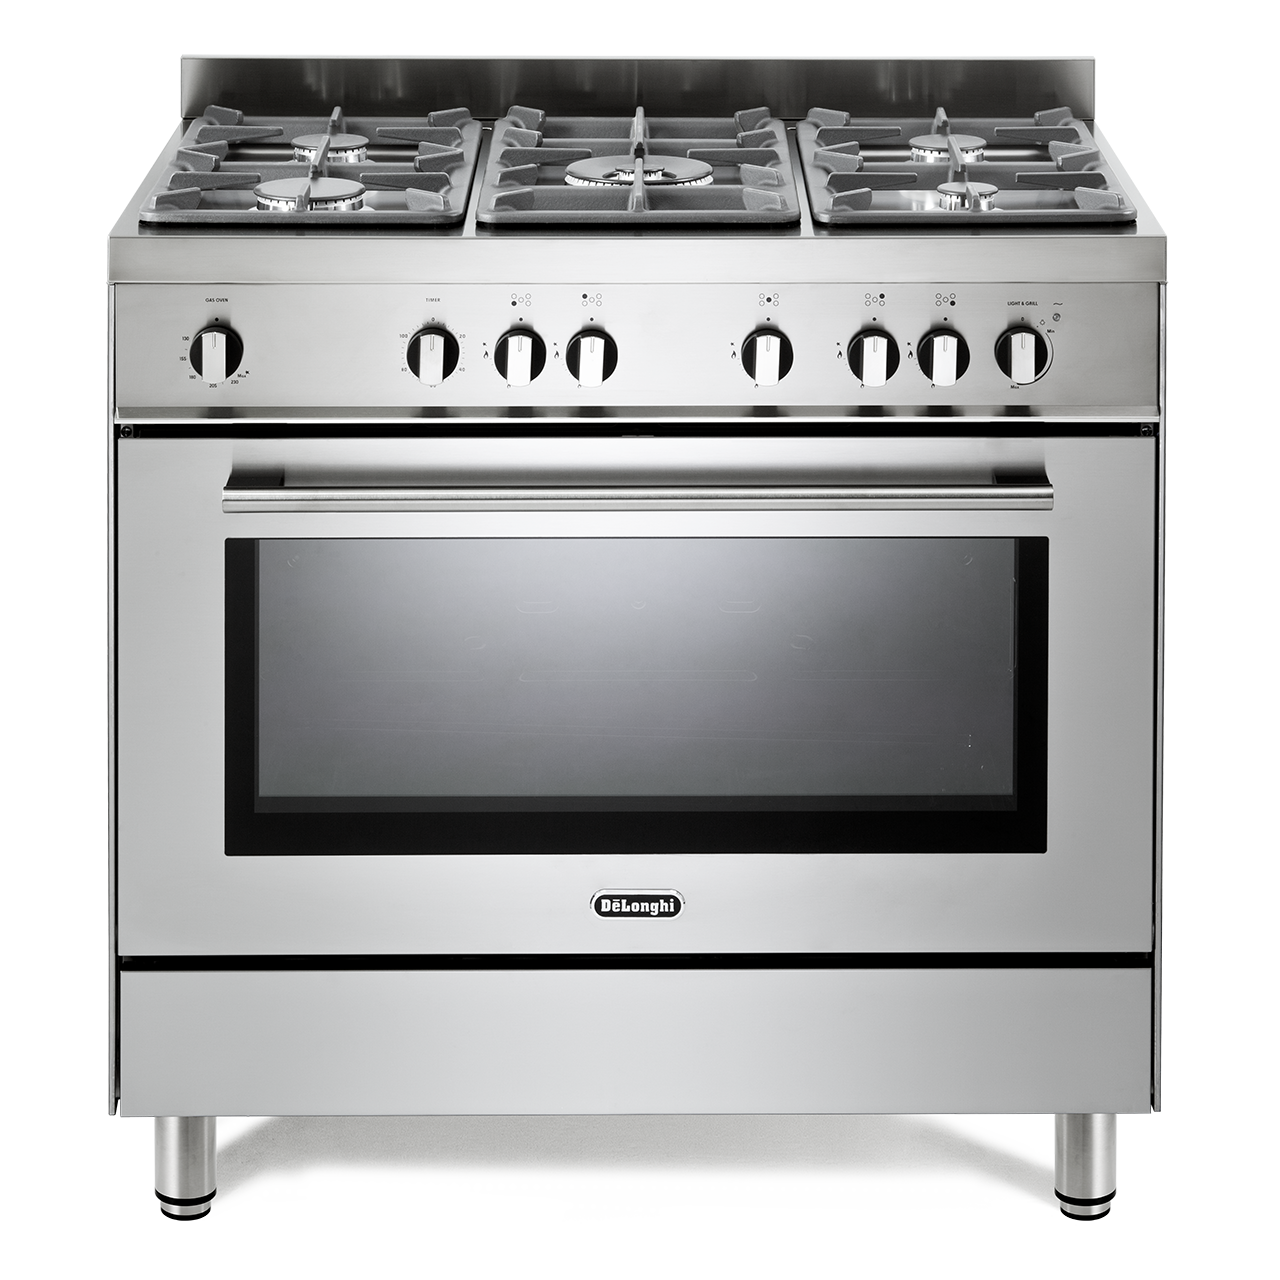 stoves-range-cooker-outlet-sales-save-61-jlcatj-gob-mx